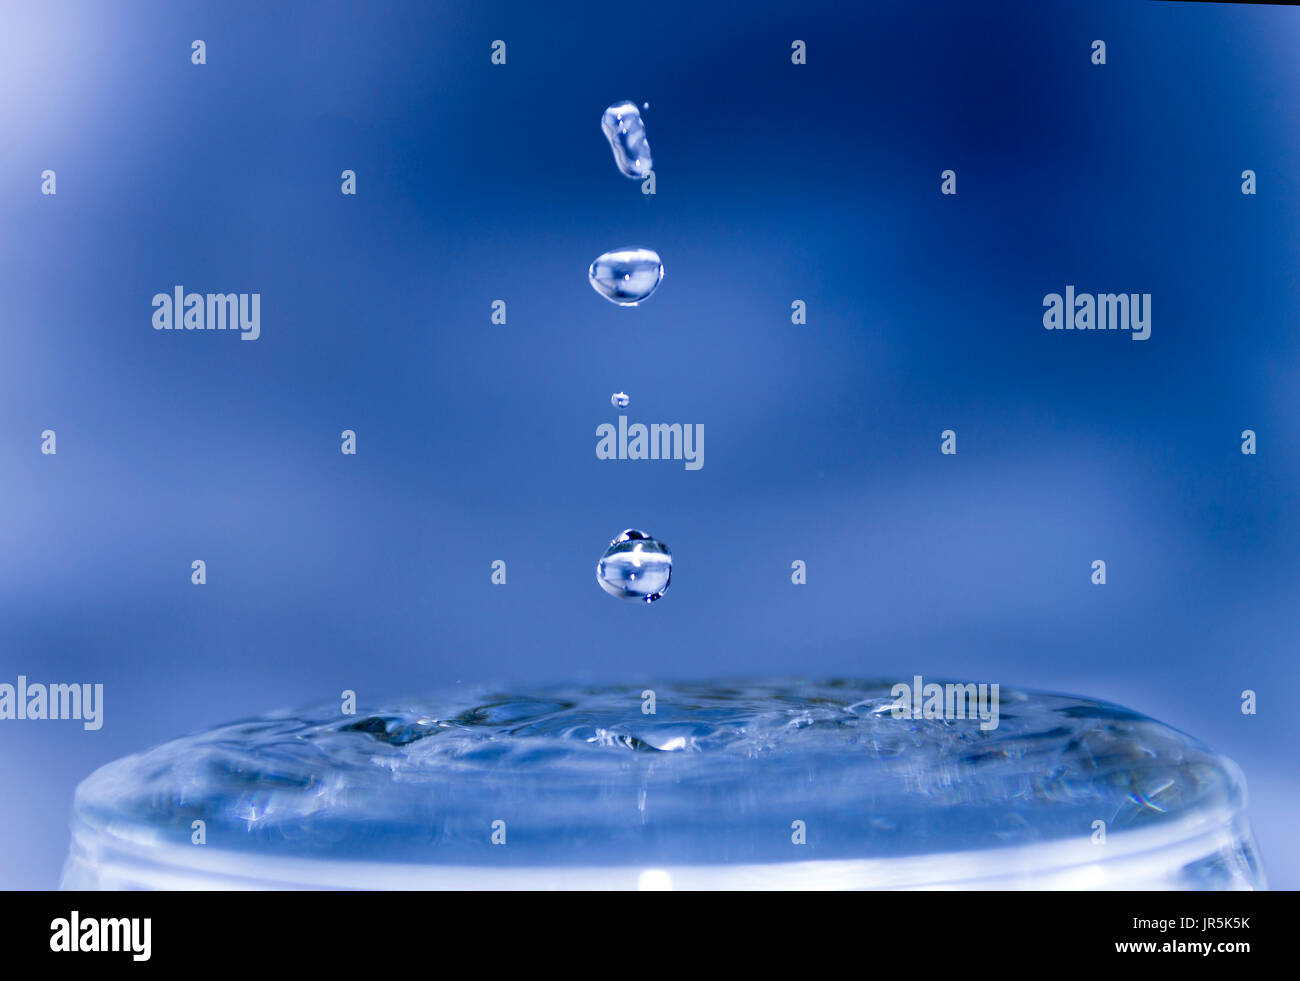 Gotas de agua congeladas con fondo azul y efecto de hielo, bebida refrescante y cristalina, choque y ondas de impacto en el vaso con agua transparente Stock Photo